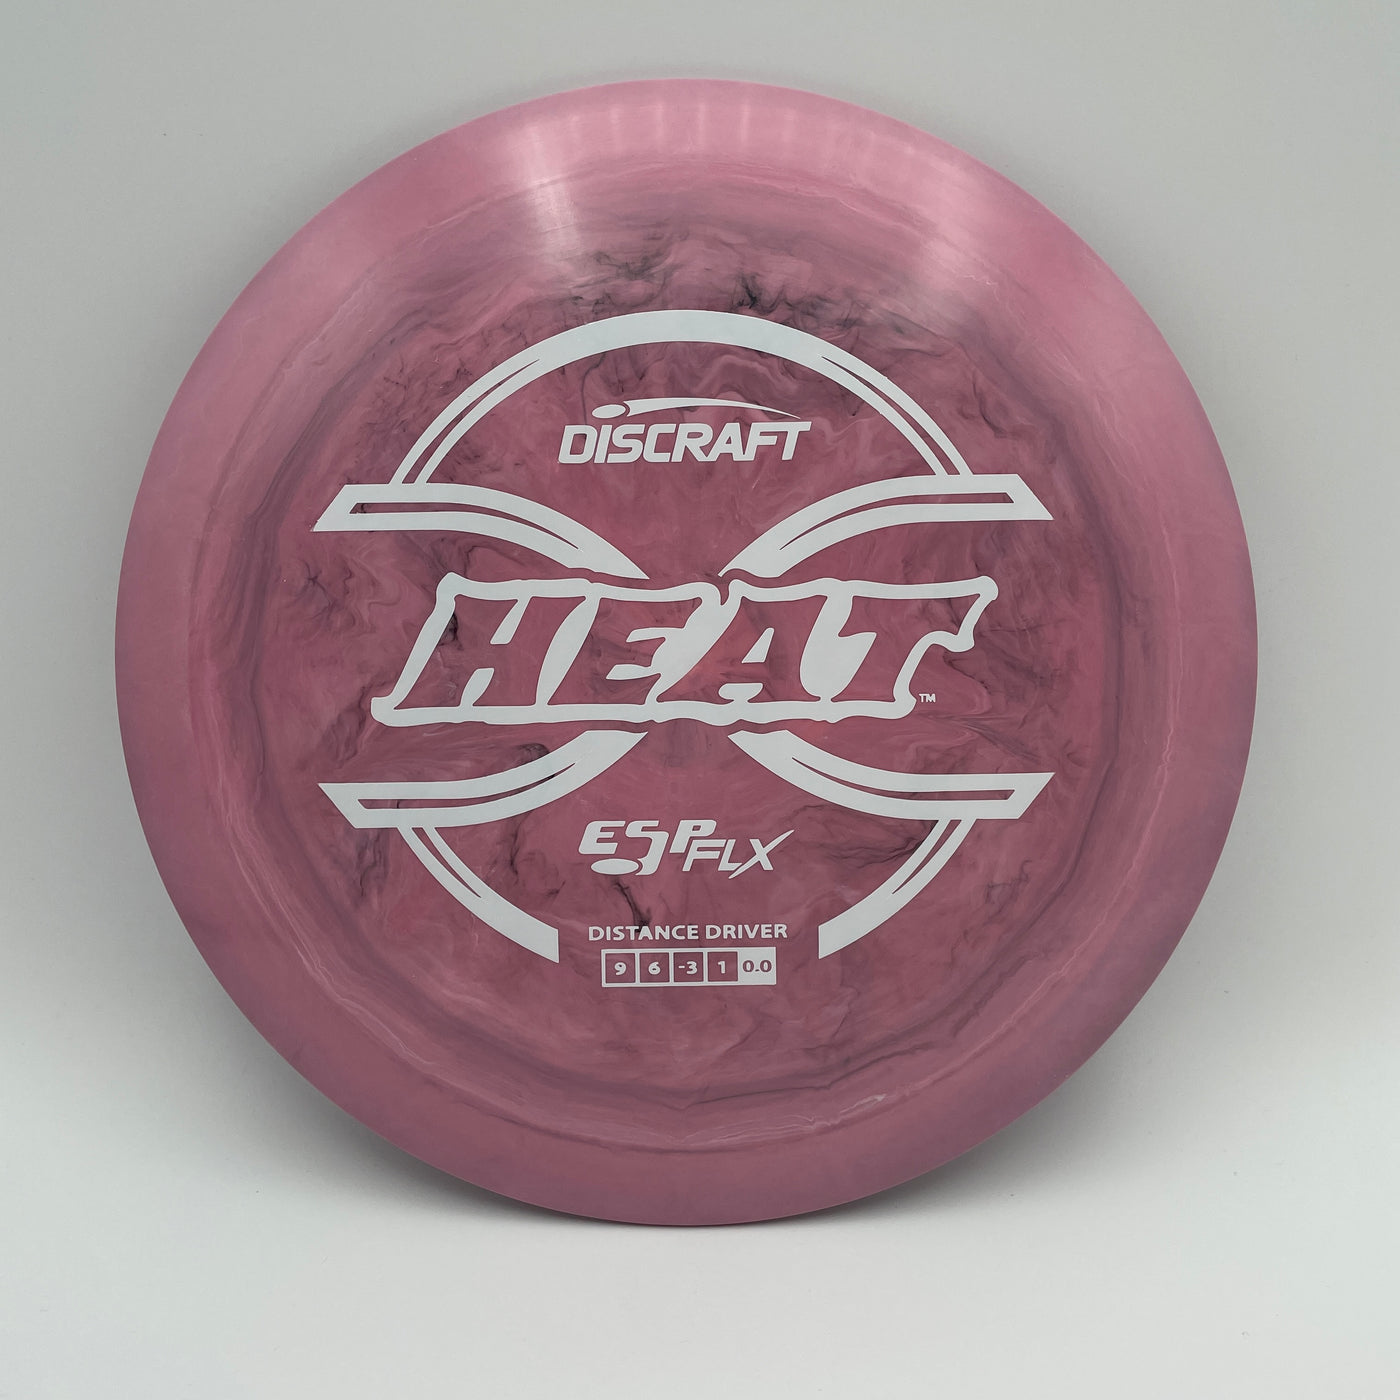 ESP FLX Heat